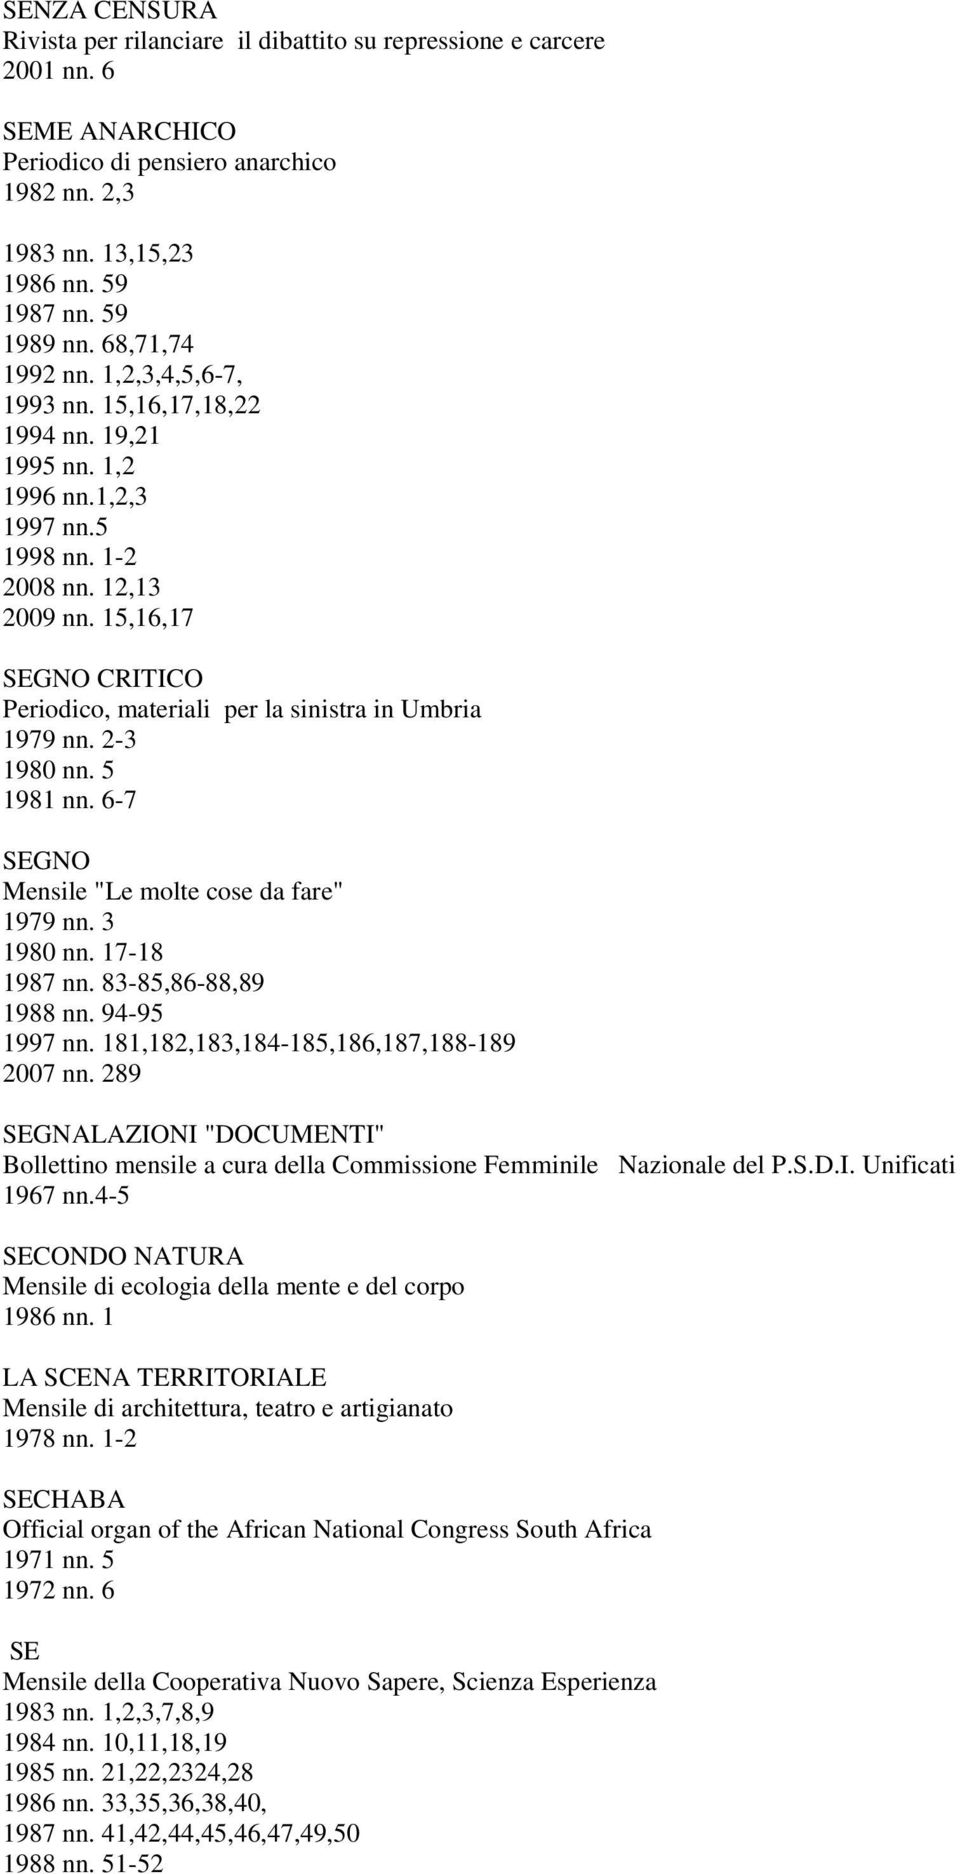 15,16,17 SEGNO CRITICO Periodico, materiali per la sinistra in Umbria 1979 nn. 2-3 1980 nn. 5 1981 nn. 6-7 SEGNO Mensile "Le molte cose da fare" 1979 nn. 3 1980 nn. 17-18 1987 nn.